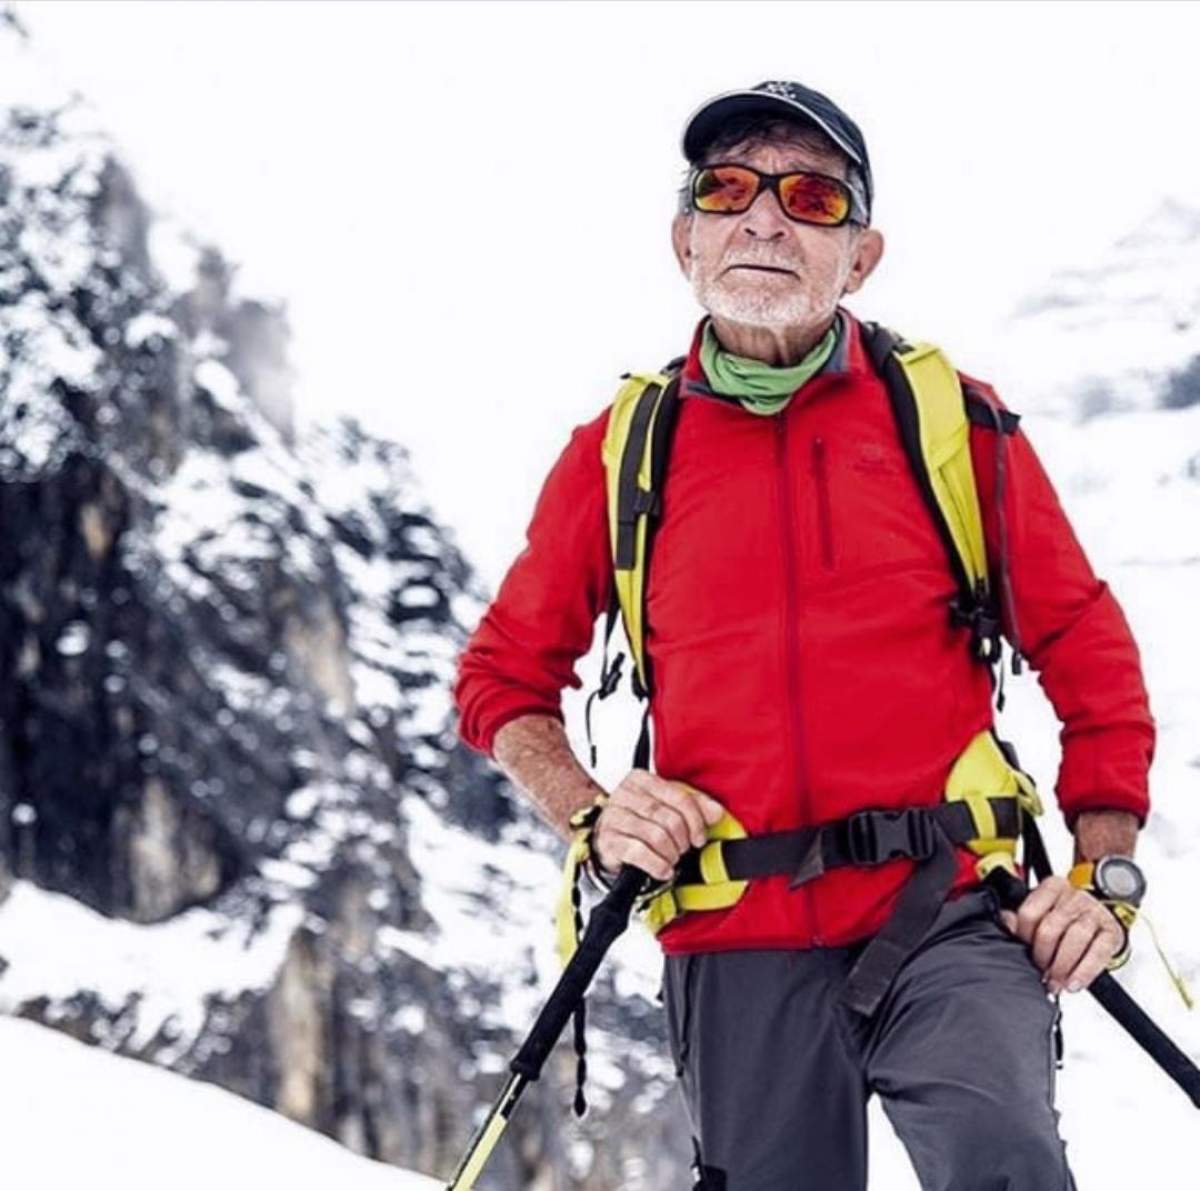 La 81 de ani, un alpinist vrea să ajungă în vârful Himalaya. Motivul pentru care și-a propus acest obiectiv